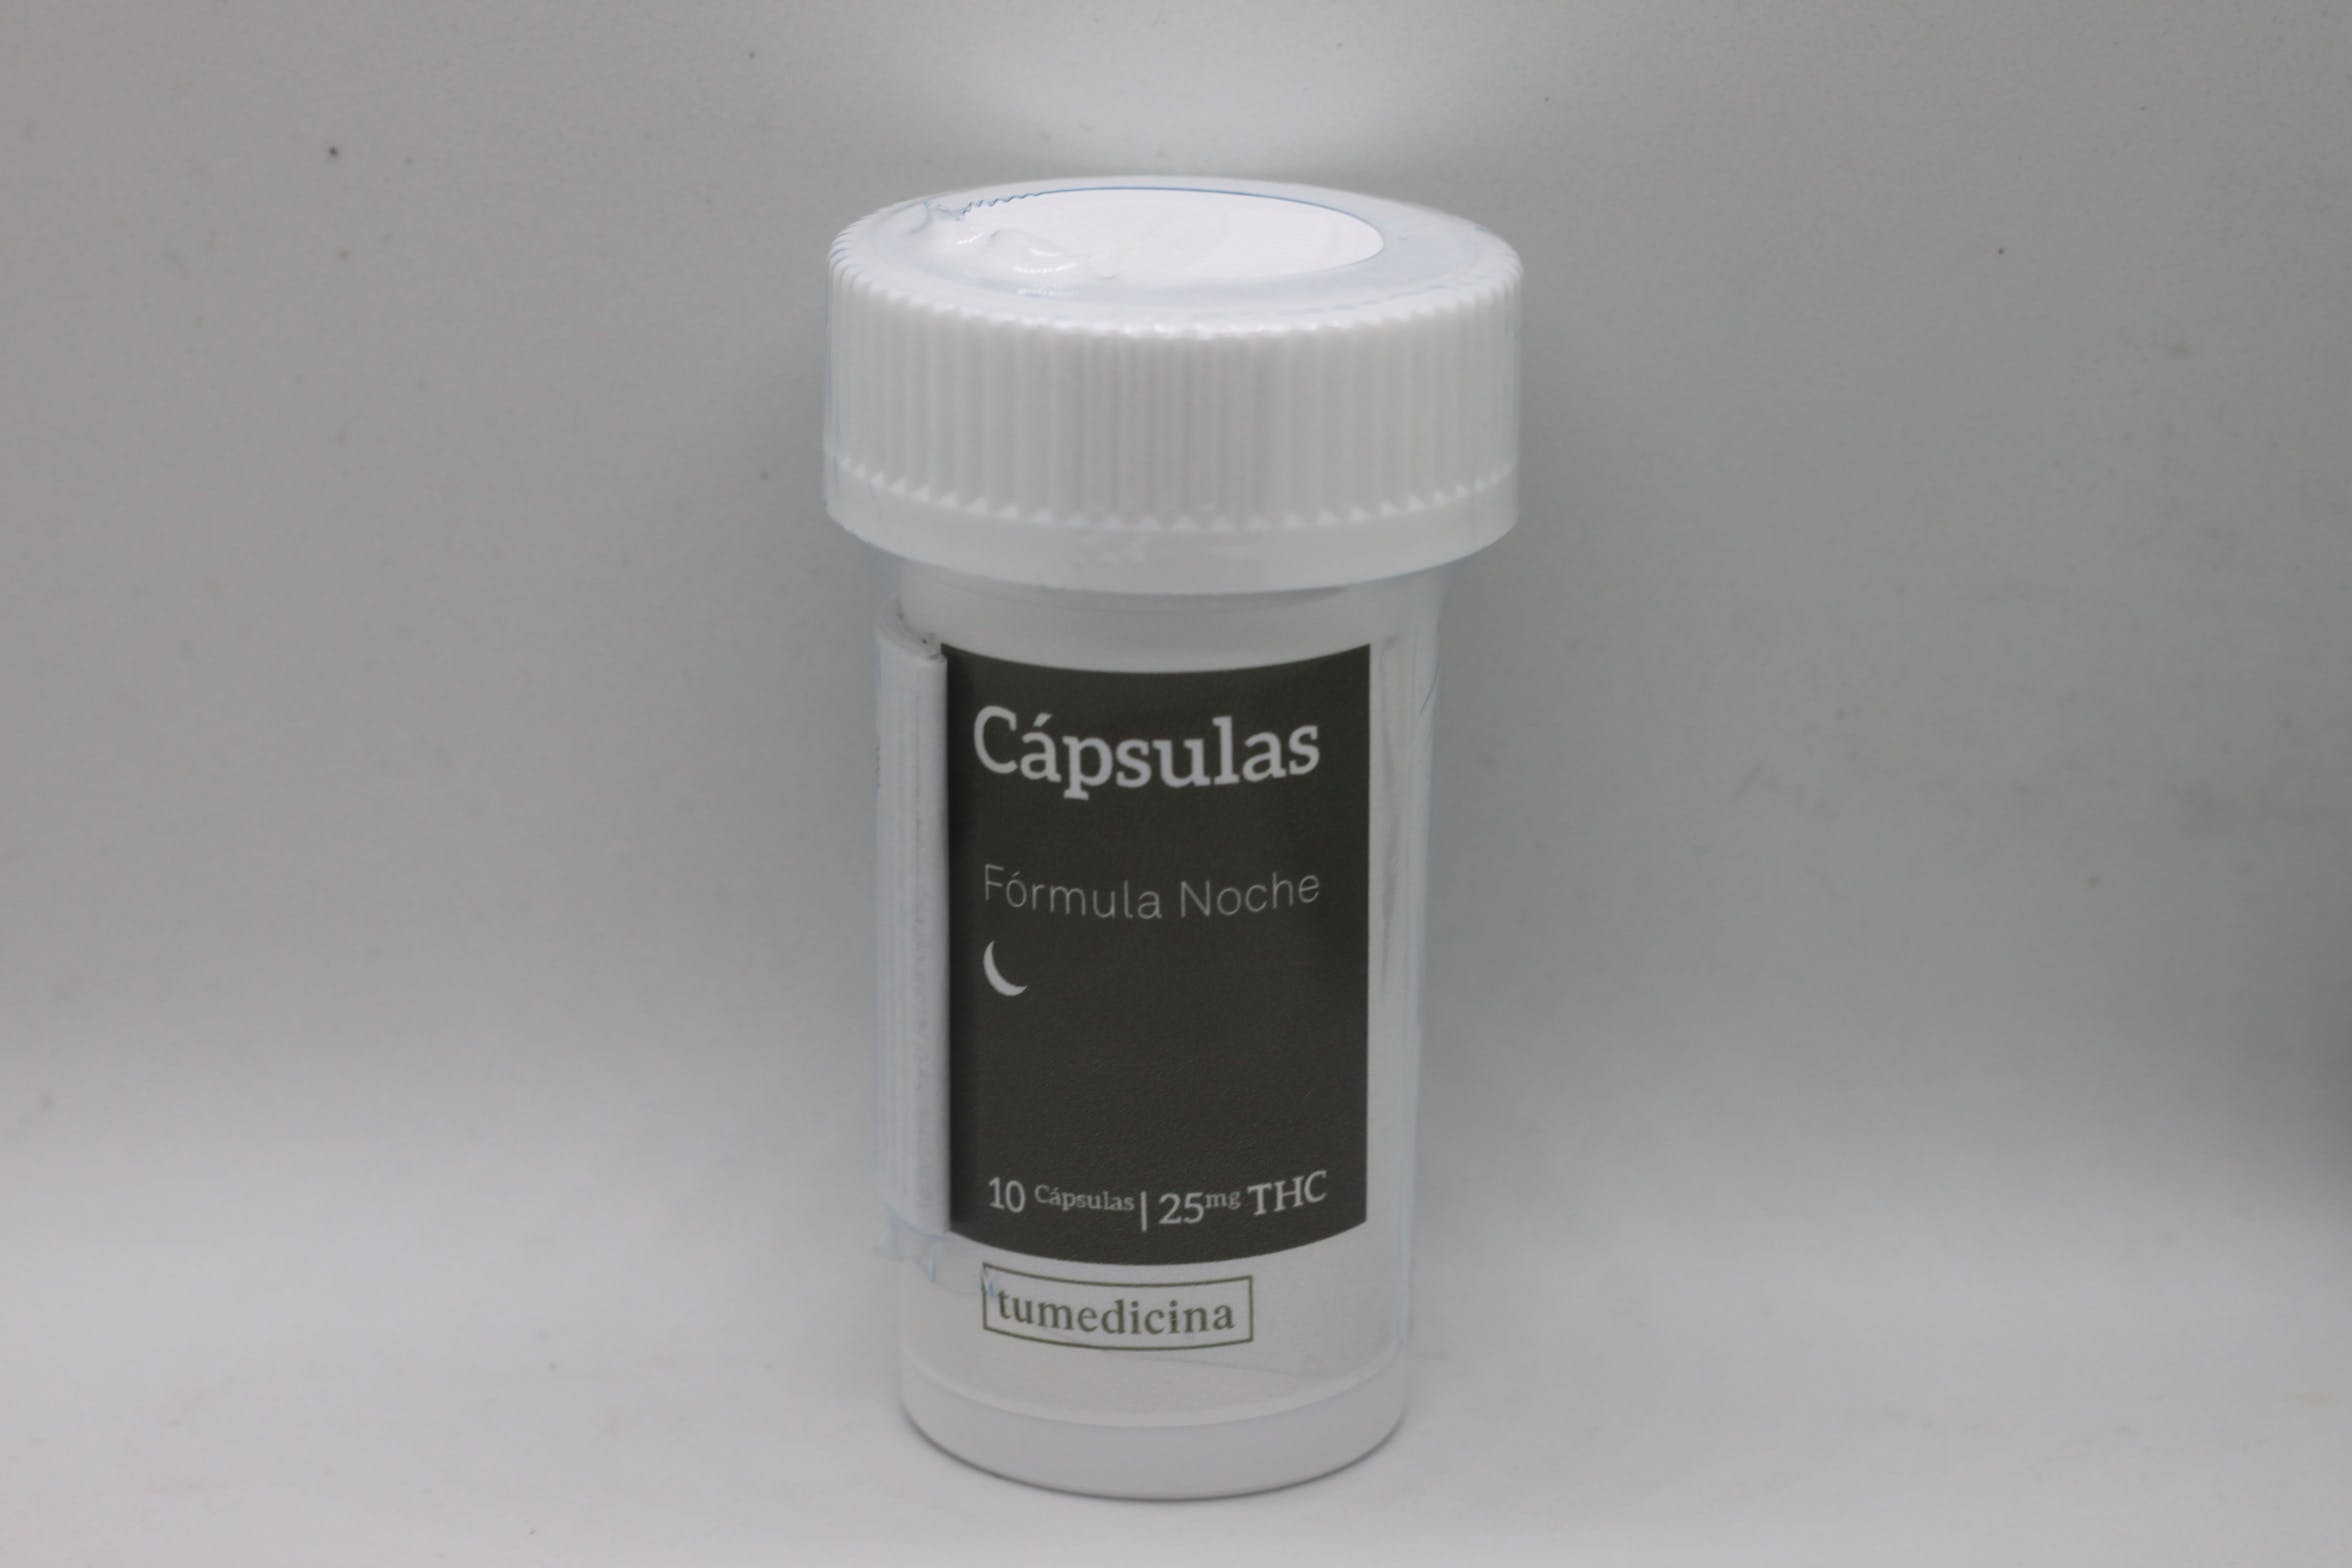 edible-cima-capsulas-night-25mg10capsulas